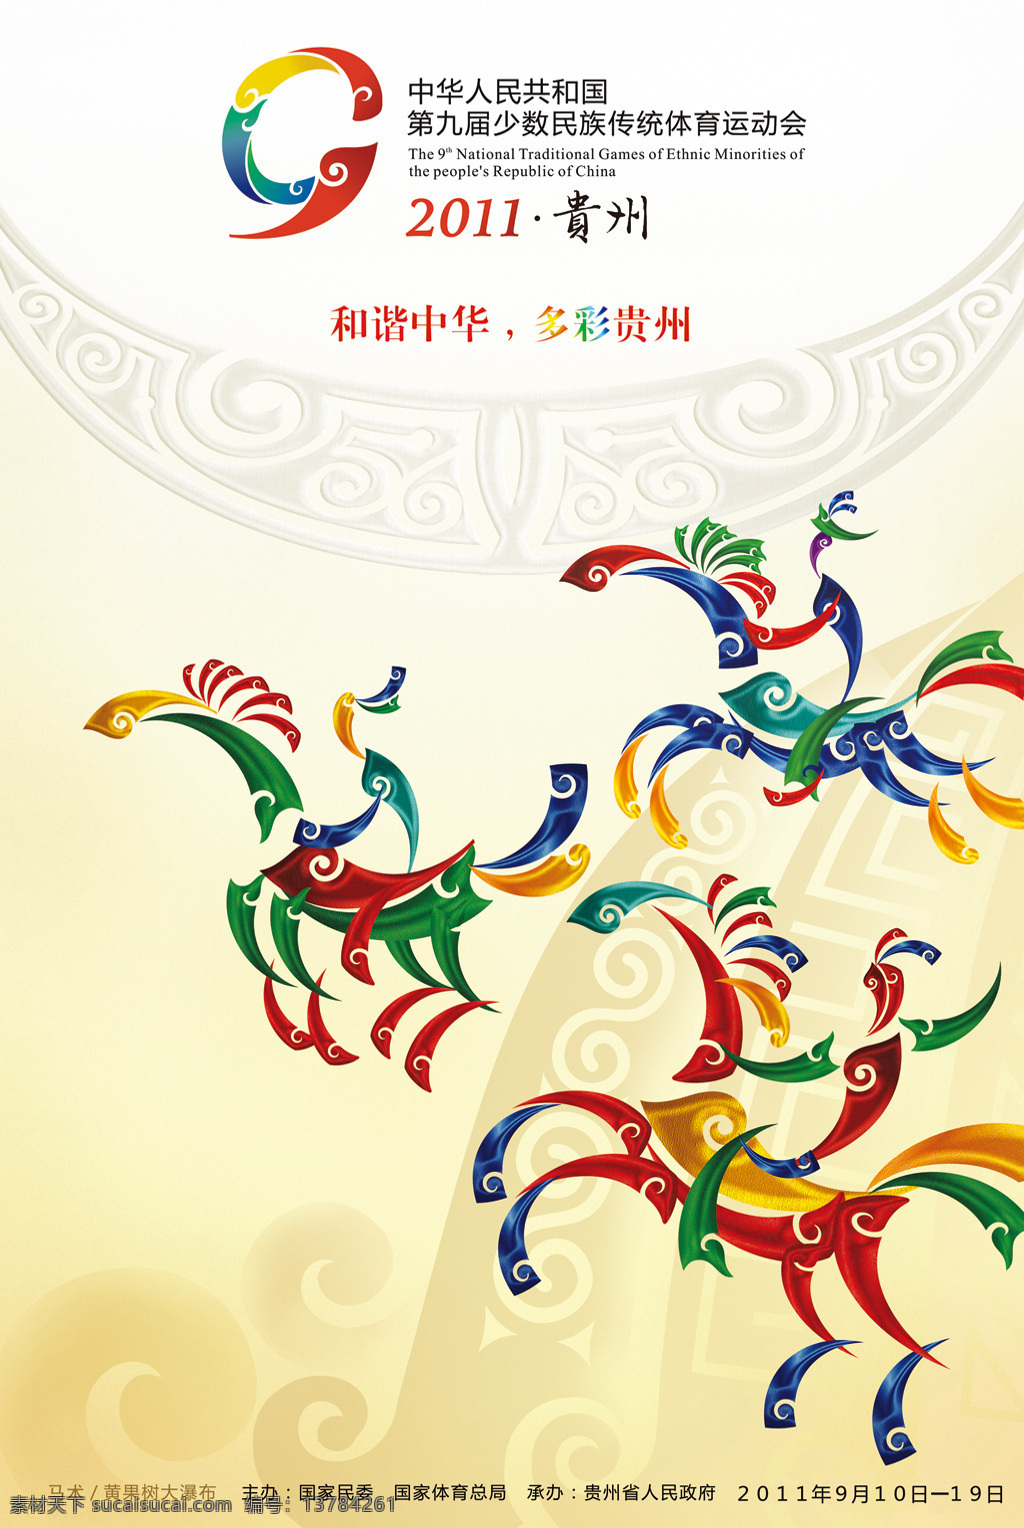 九运会海报 贵州 第九届 少数民族 运动会 海报 招贴设计